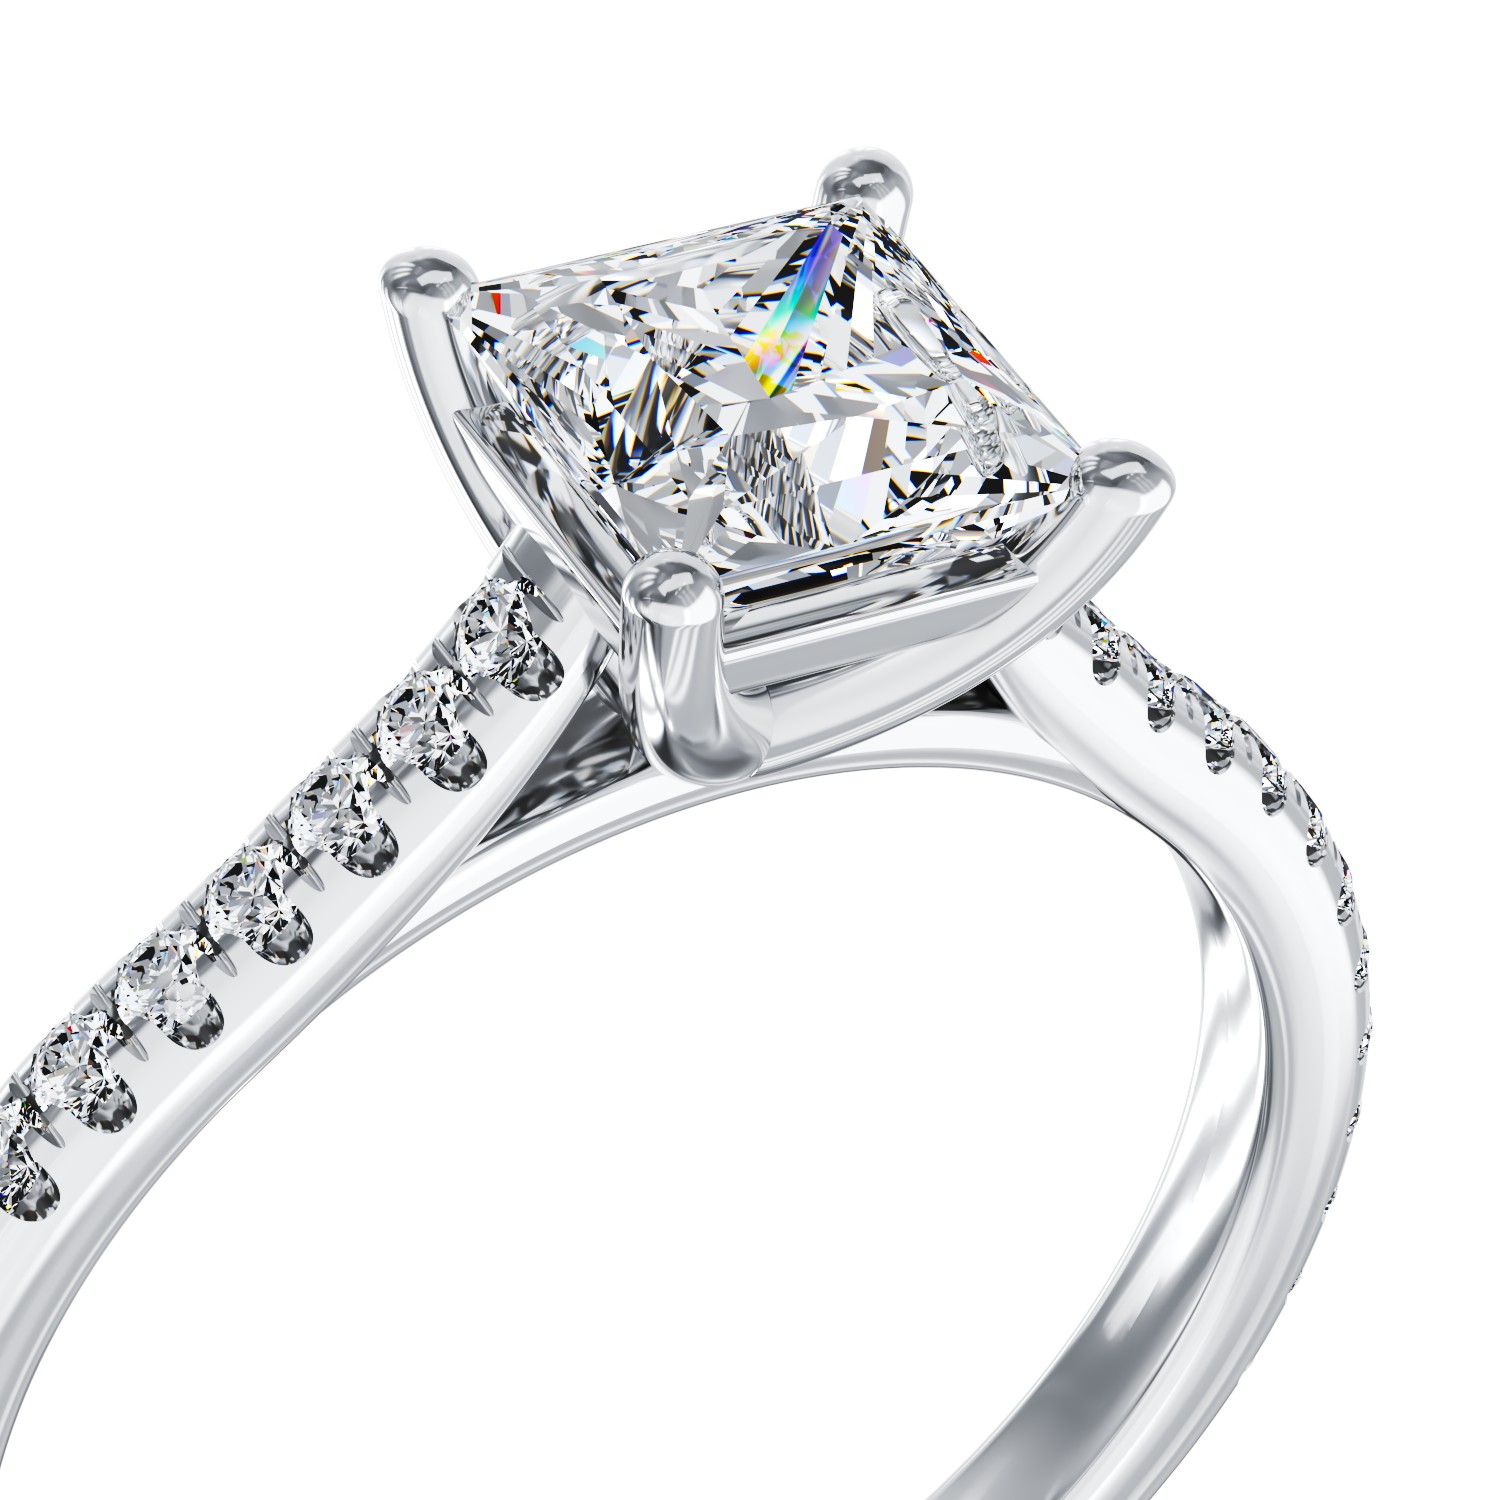 Годежен пръстен от платина с диамант 1гкт u диаманти 0.254гкт